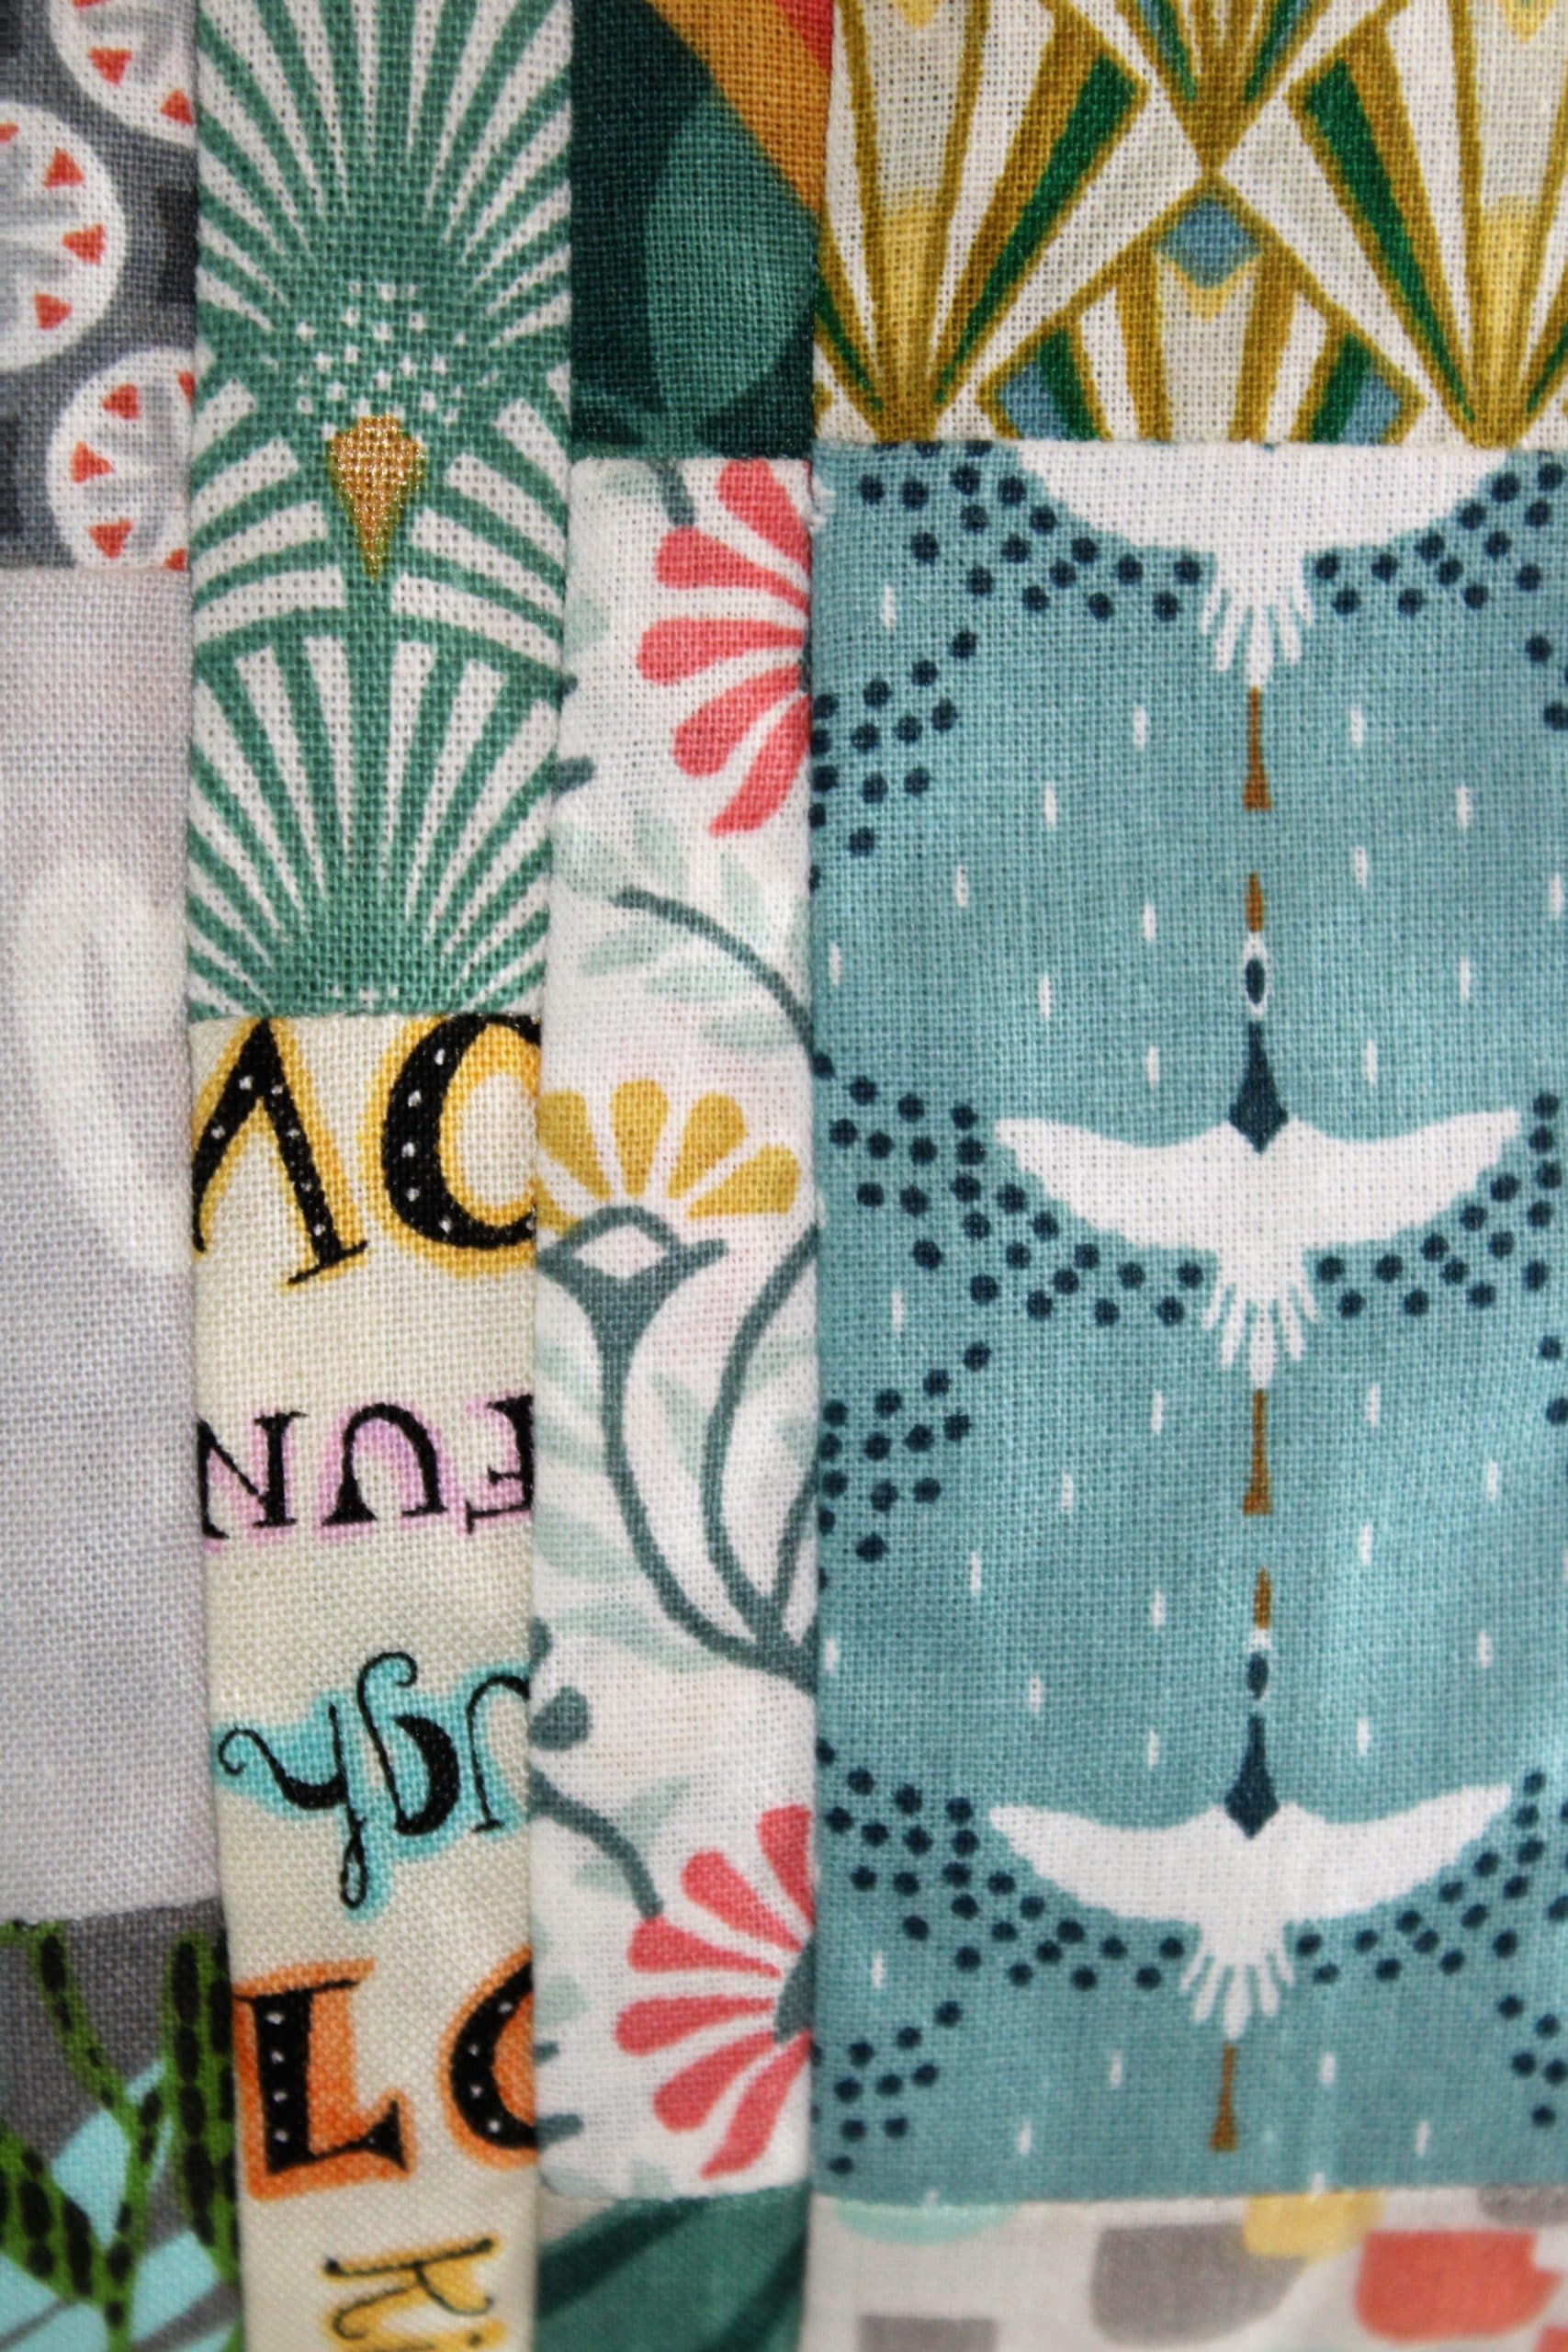 Assemblage de tissu avec Cigognes, pour une pochette zippée, doublée et molletonnée. Atelier à Villefranque (64)